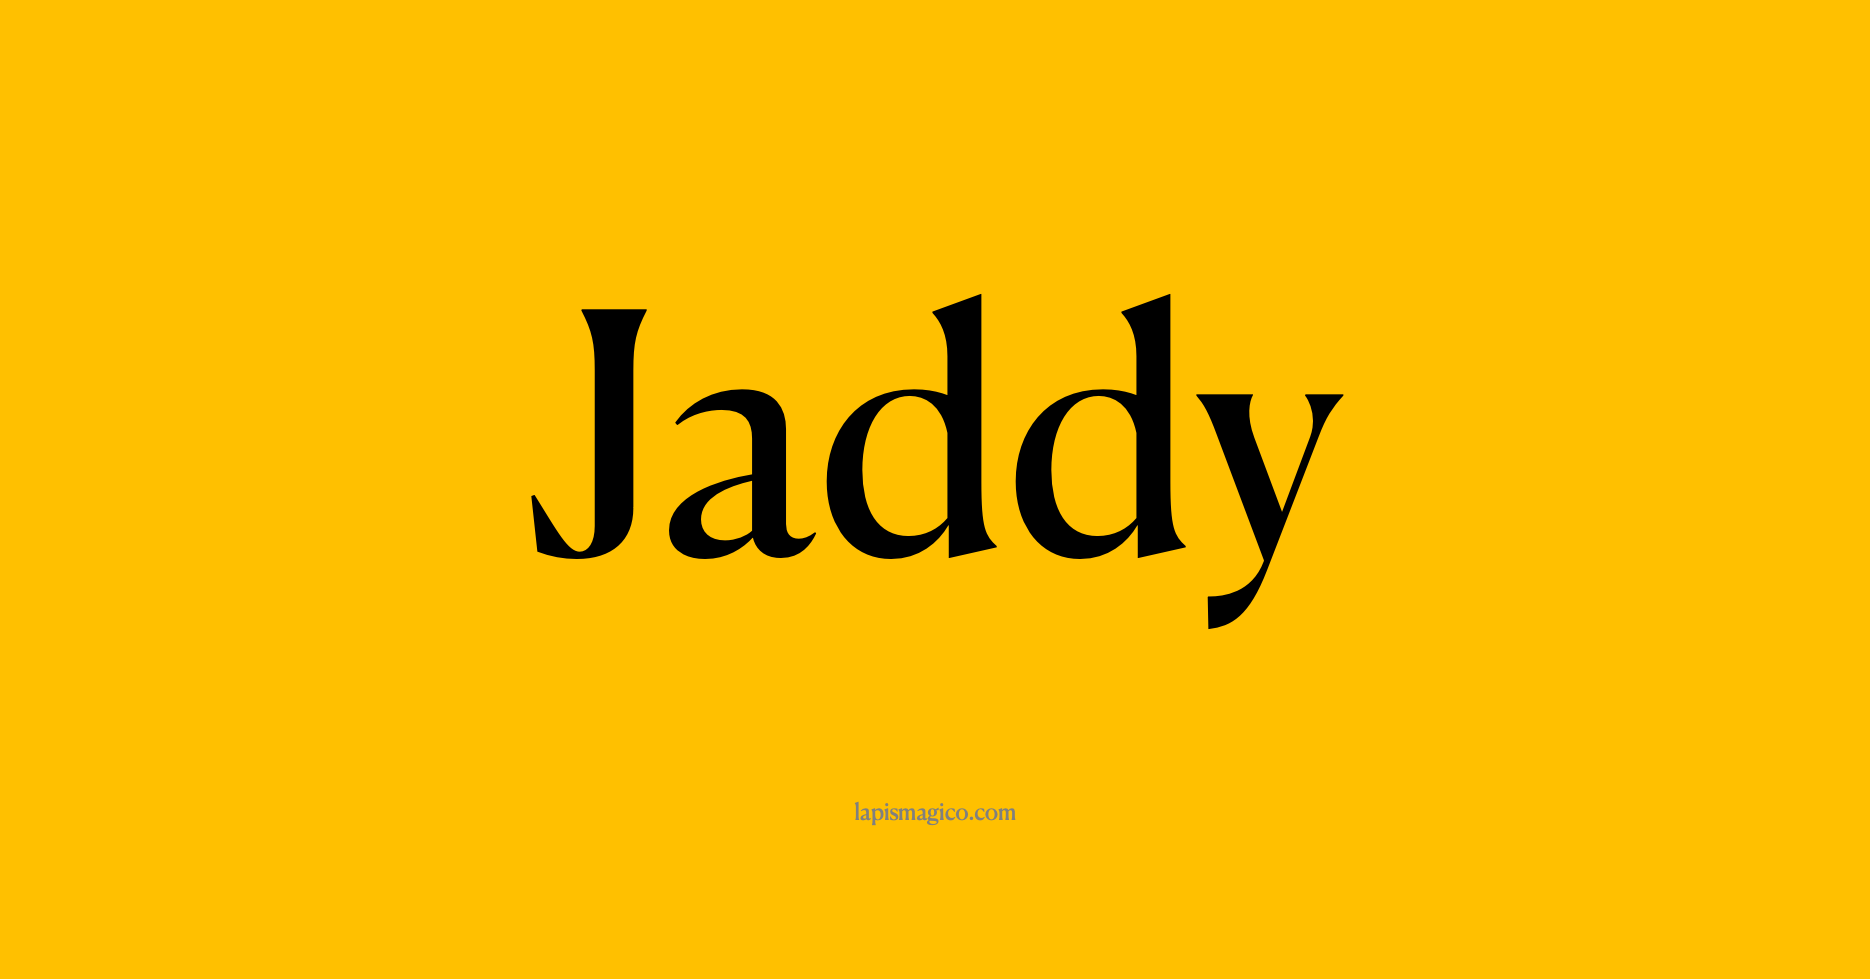 Nome Jaddy, ficha divertida com pontilhado para crianças